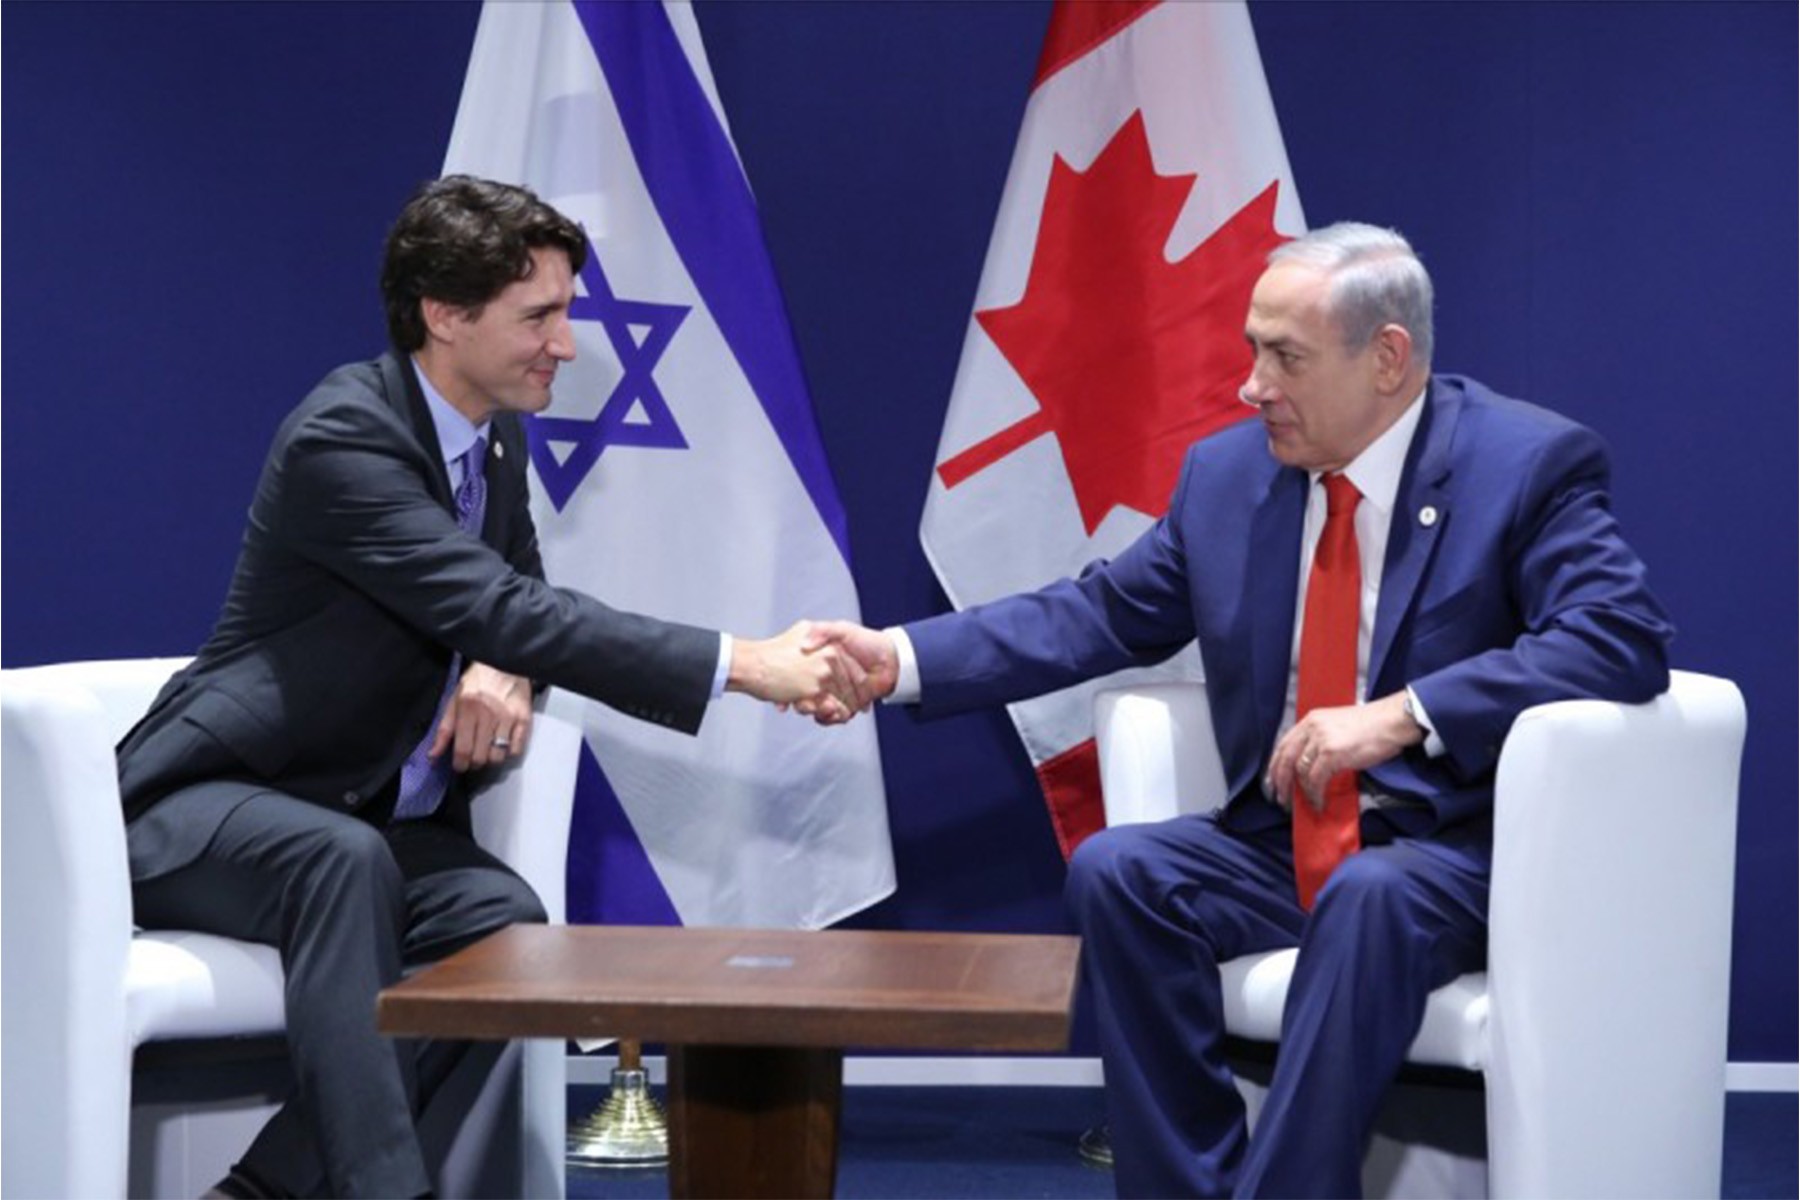 جاستین ترودو؛ برگزاری تظاهرات طرفداران حماس در کانادا را محکوم کرد